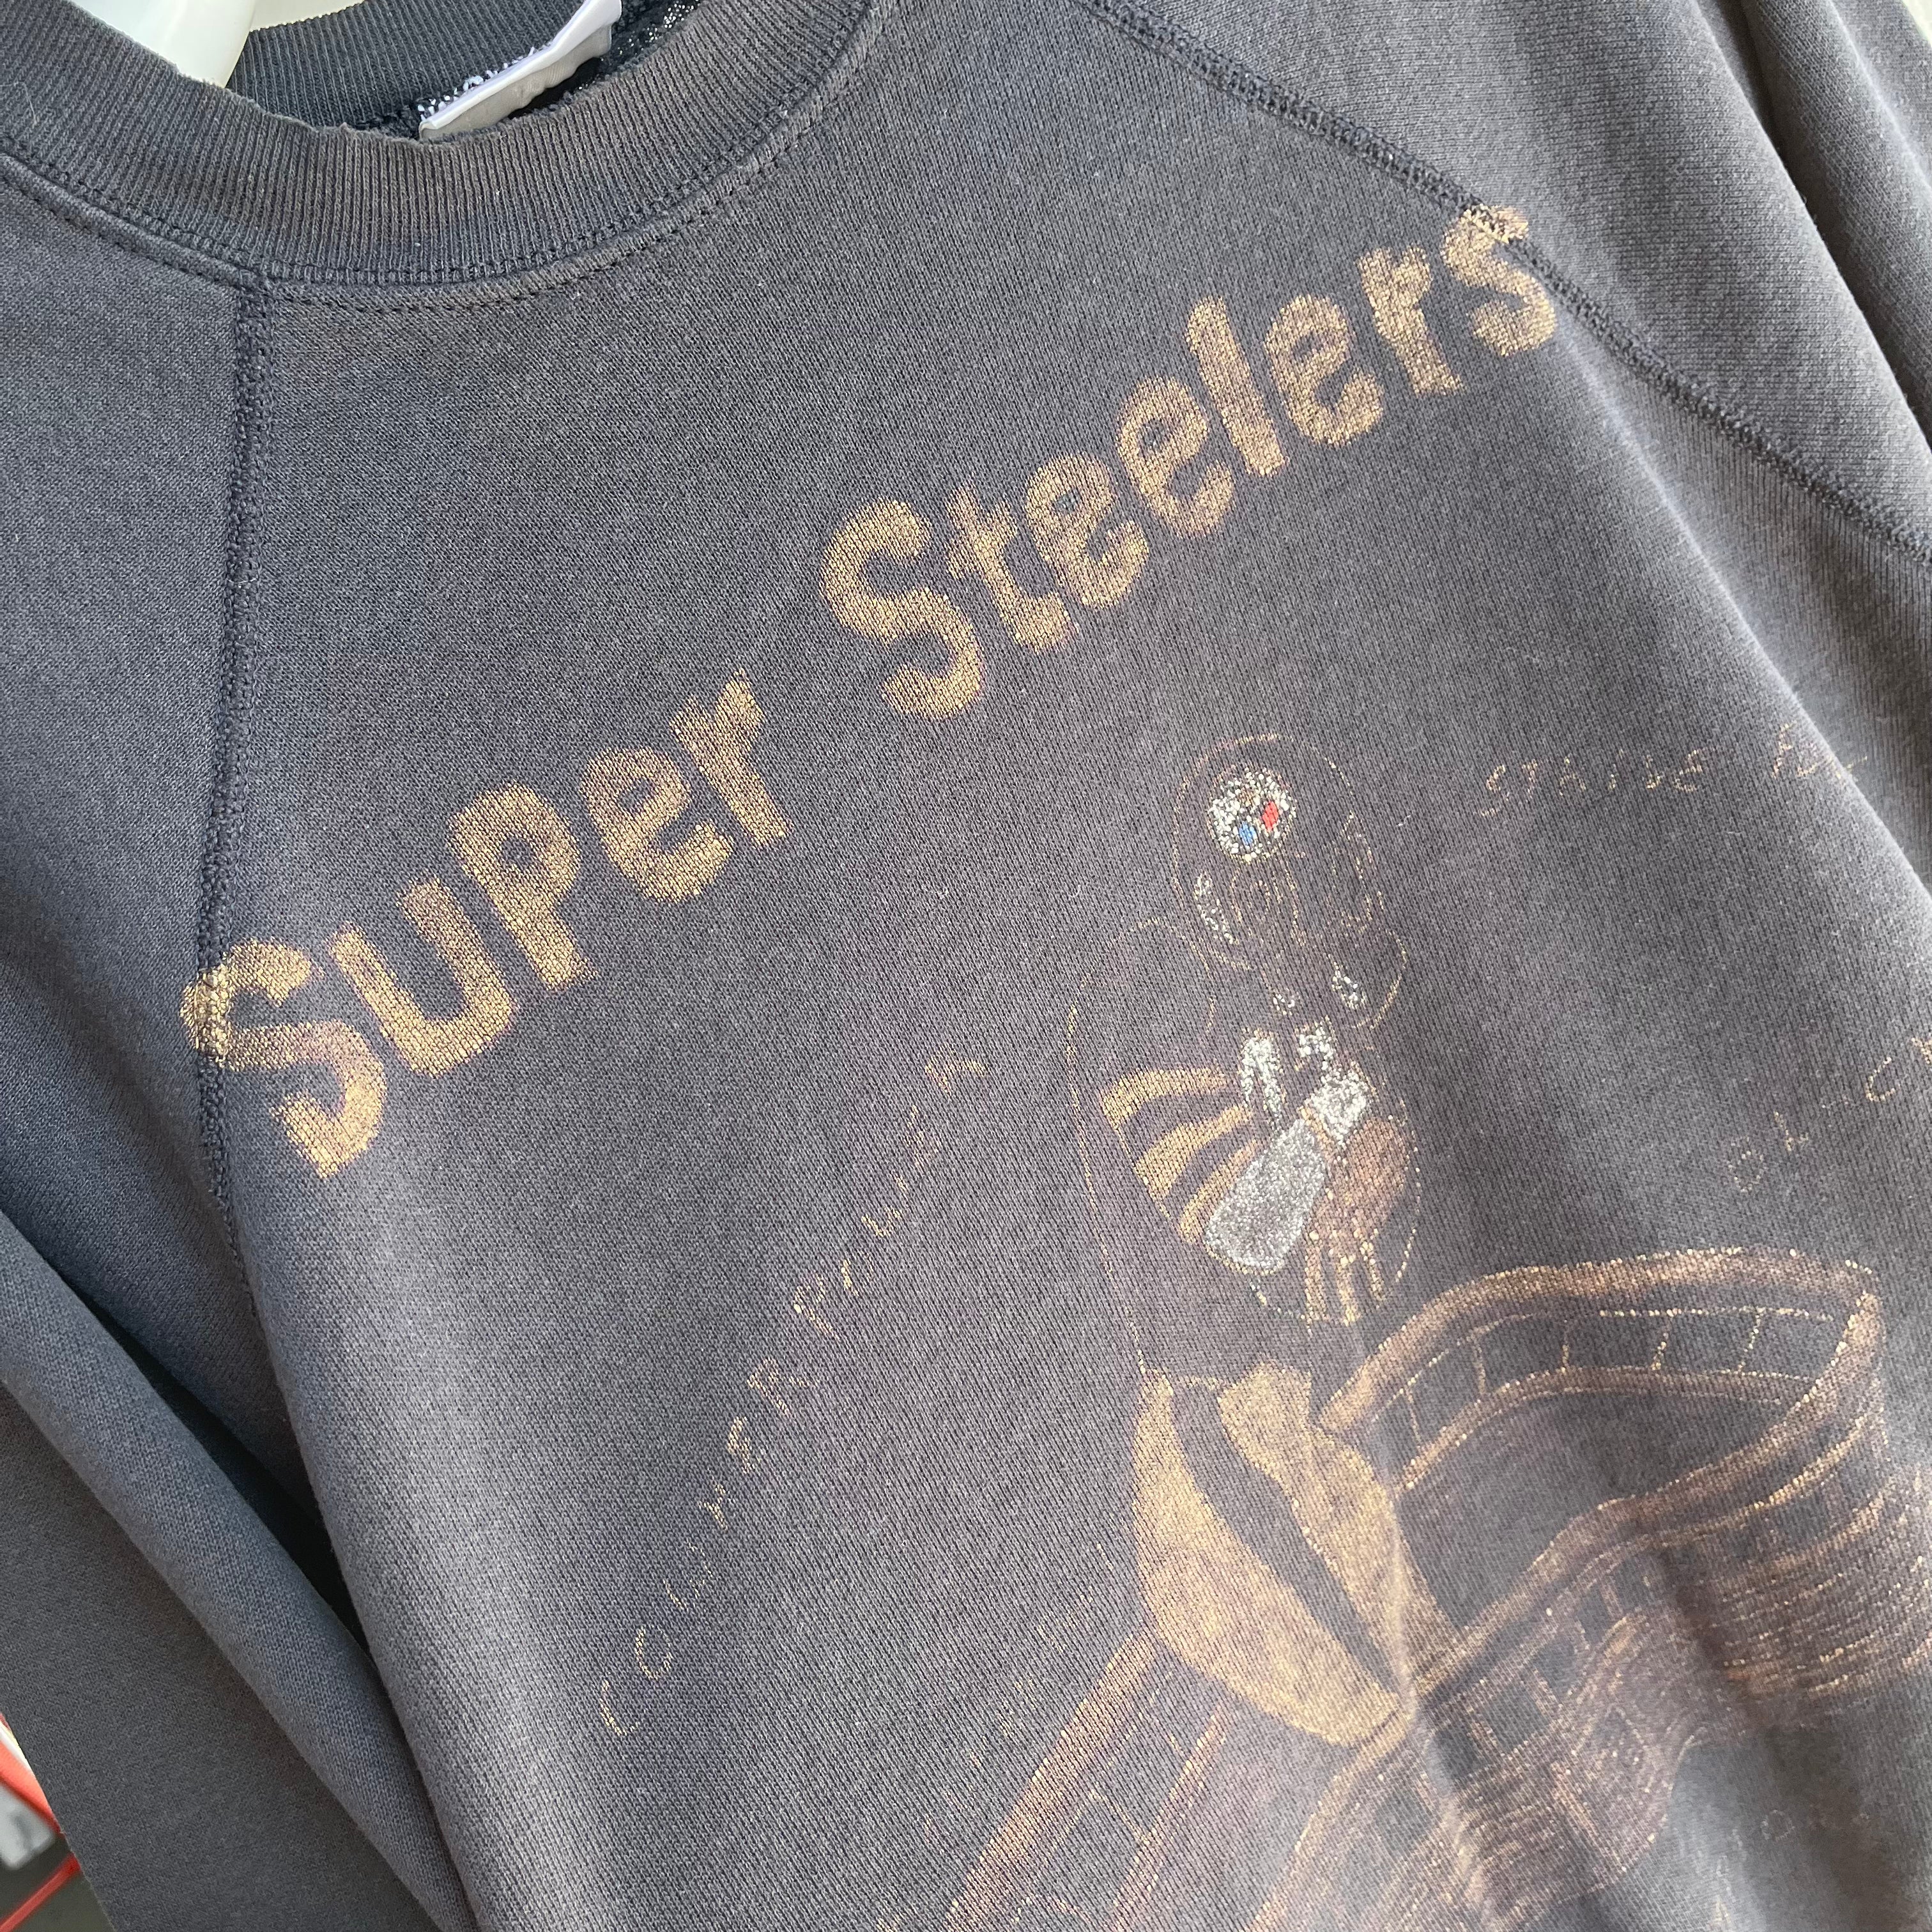 1980/90s DIY Steelers Fan's Favorite Sweatshirt that has a lot to say